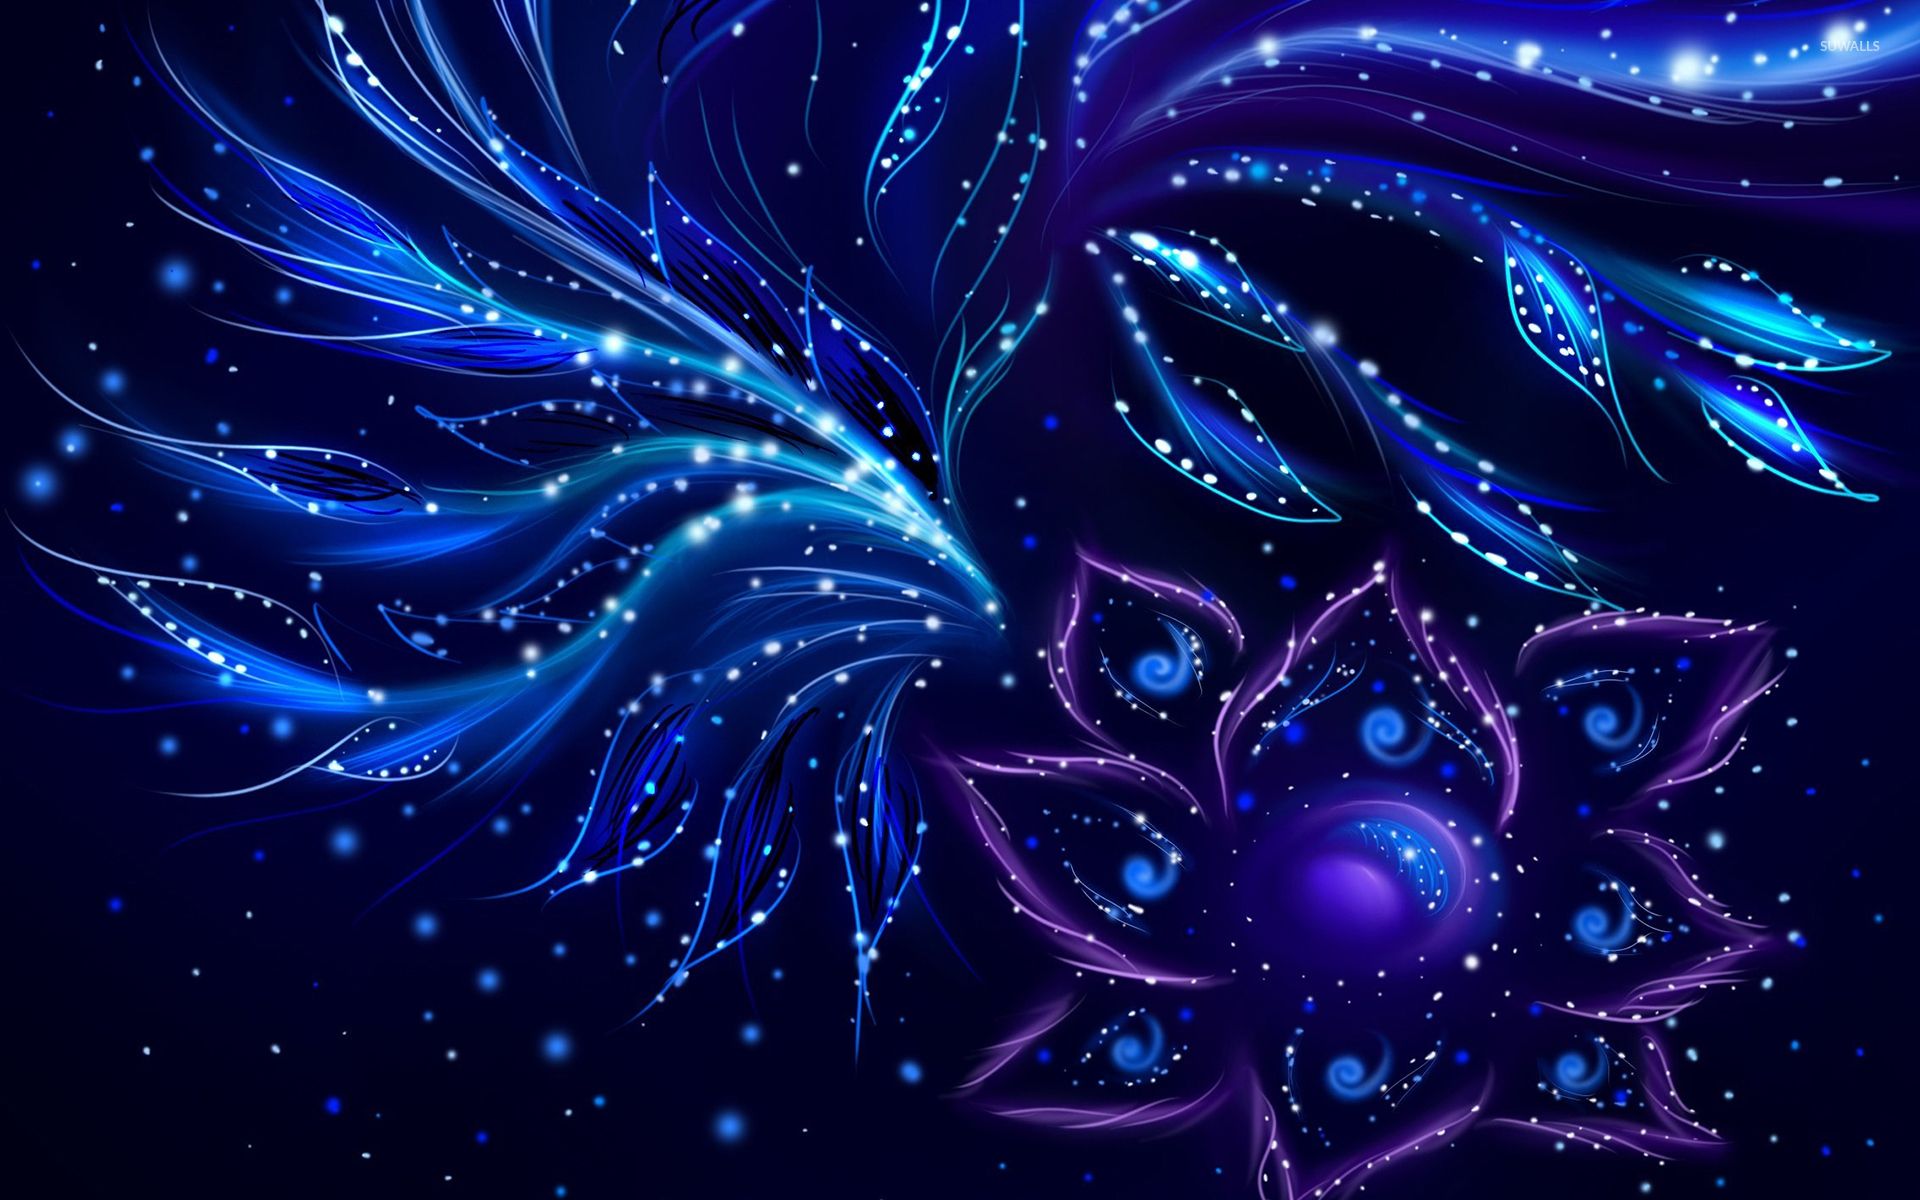 Blue swirls on the purple flower wallpaper wallpaper